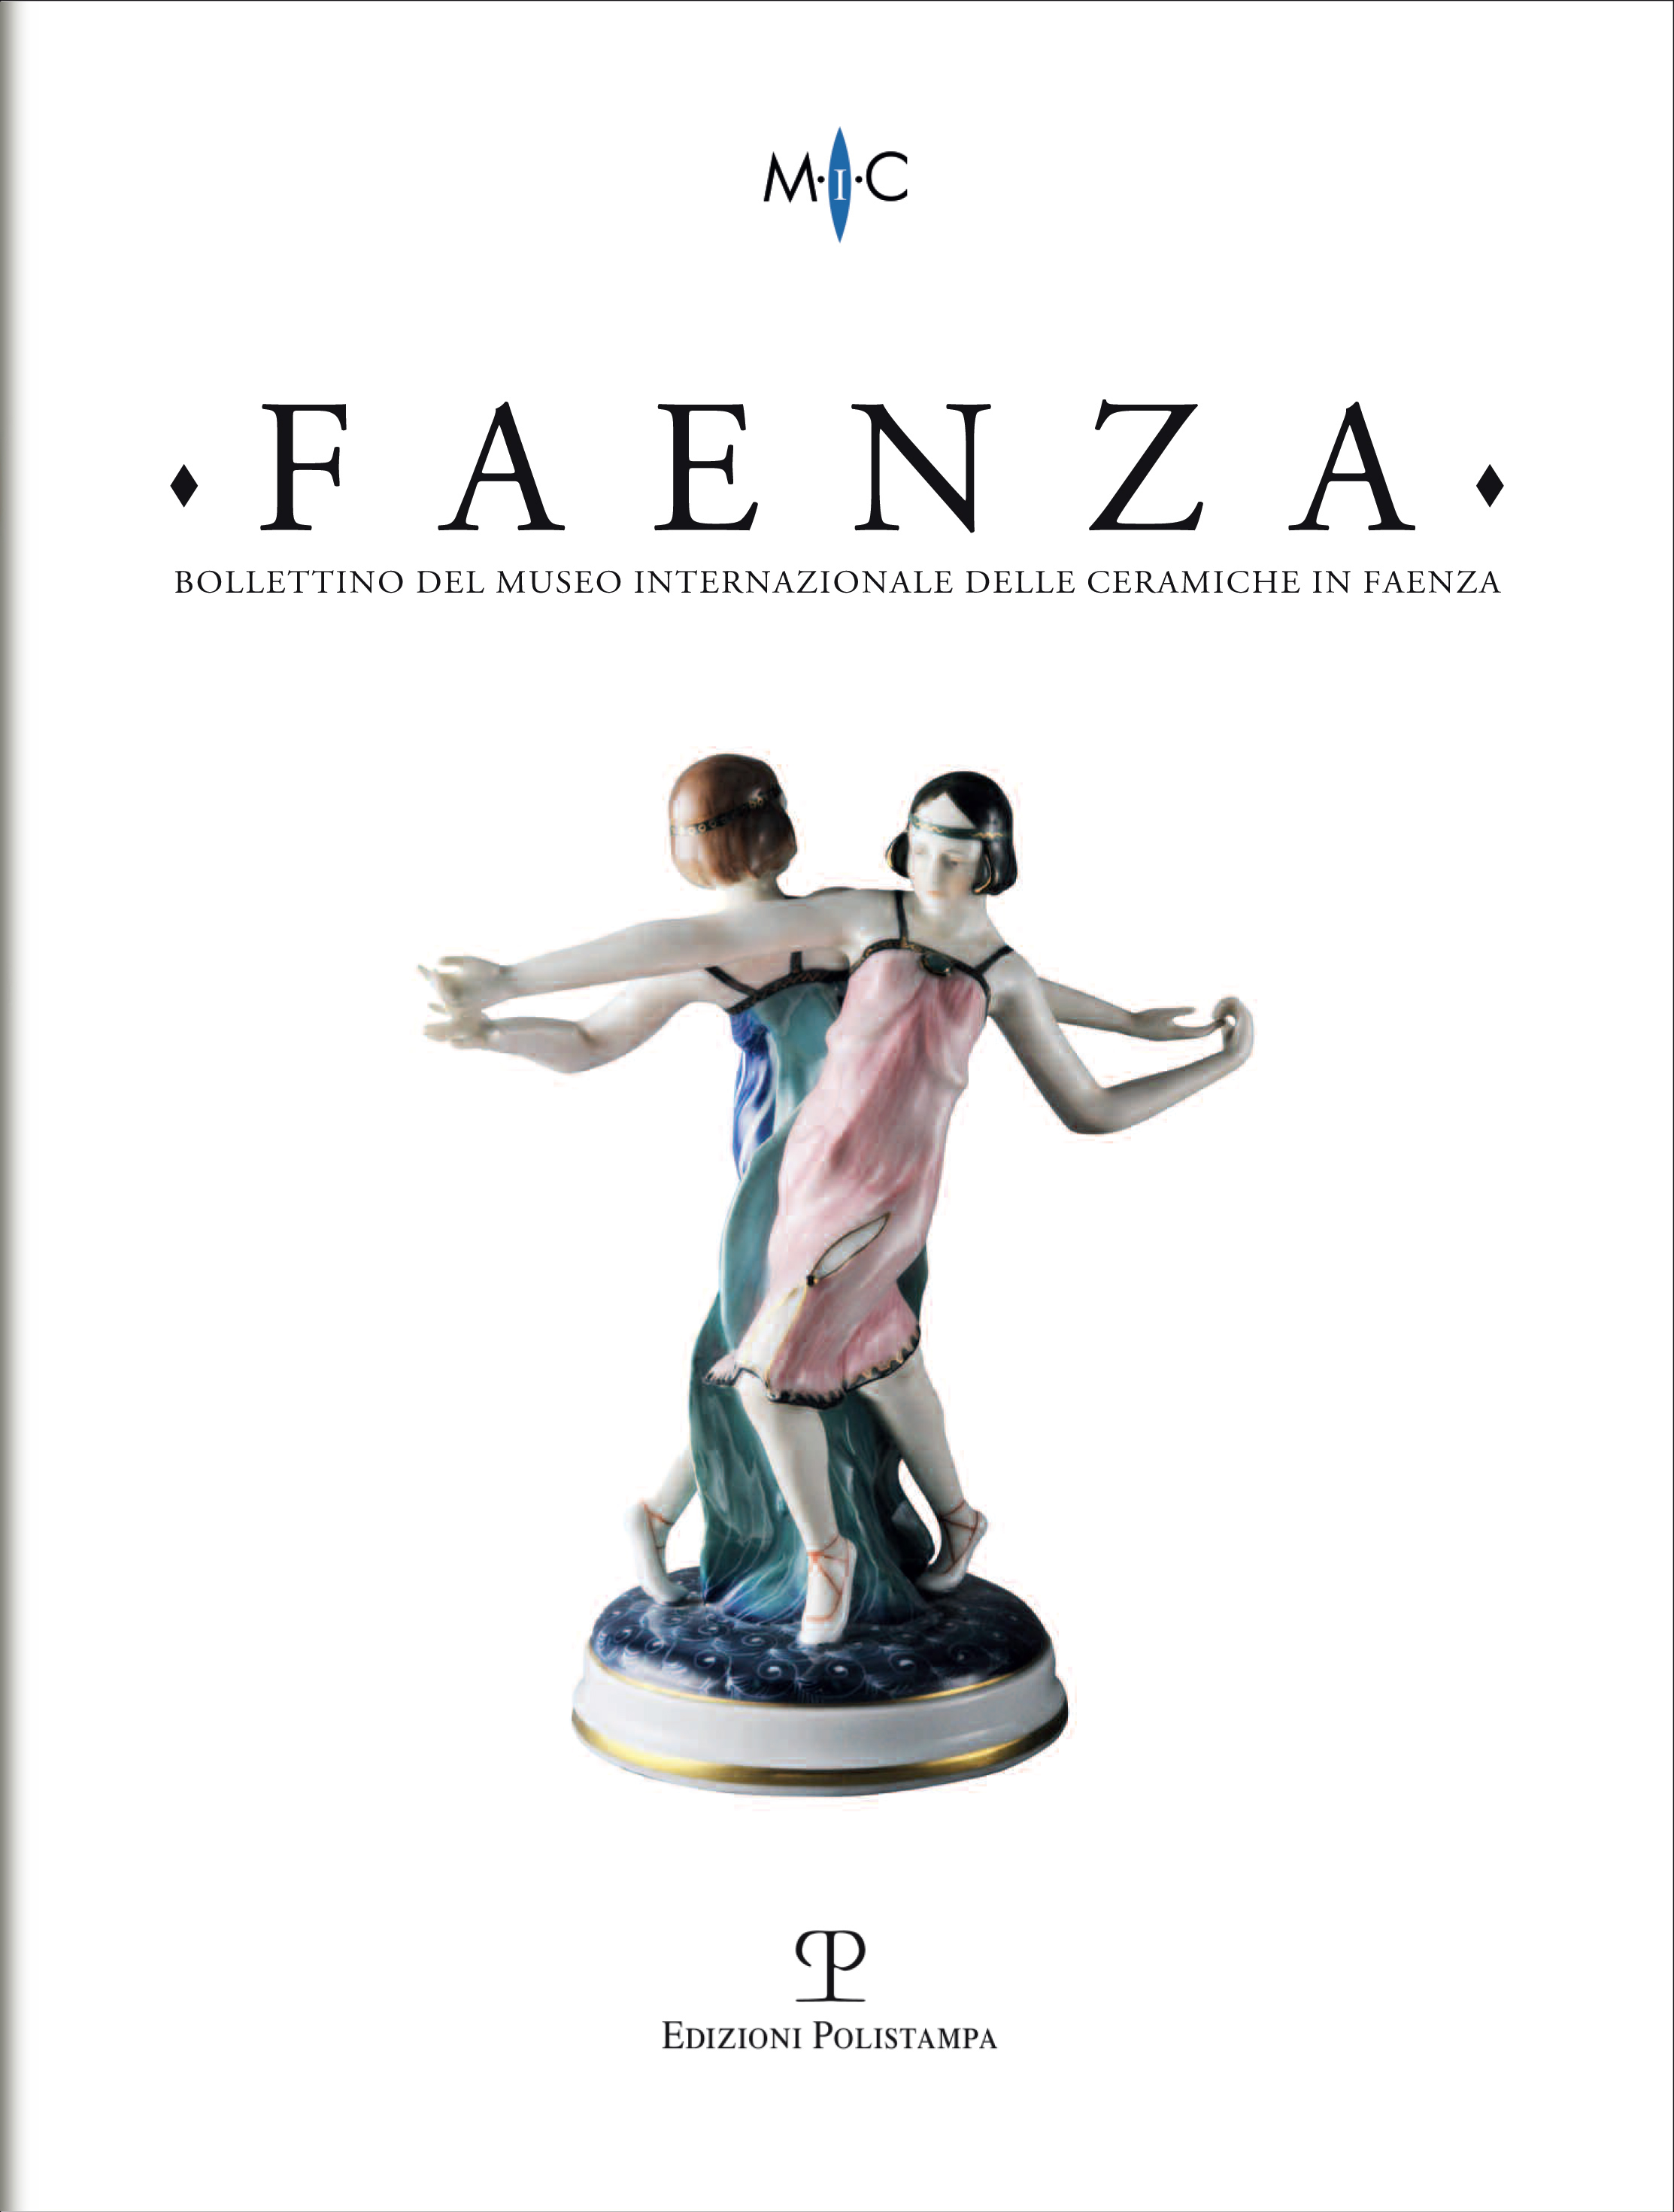 Article, Una collezione di ceramiche palestinesi delle Ceramiche in Faenza, Polistampa